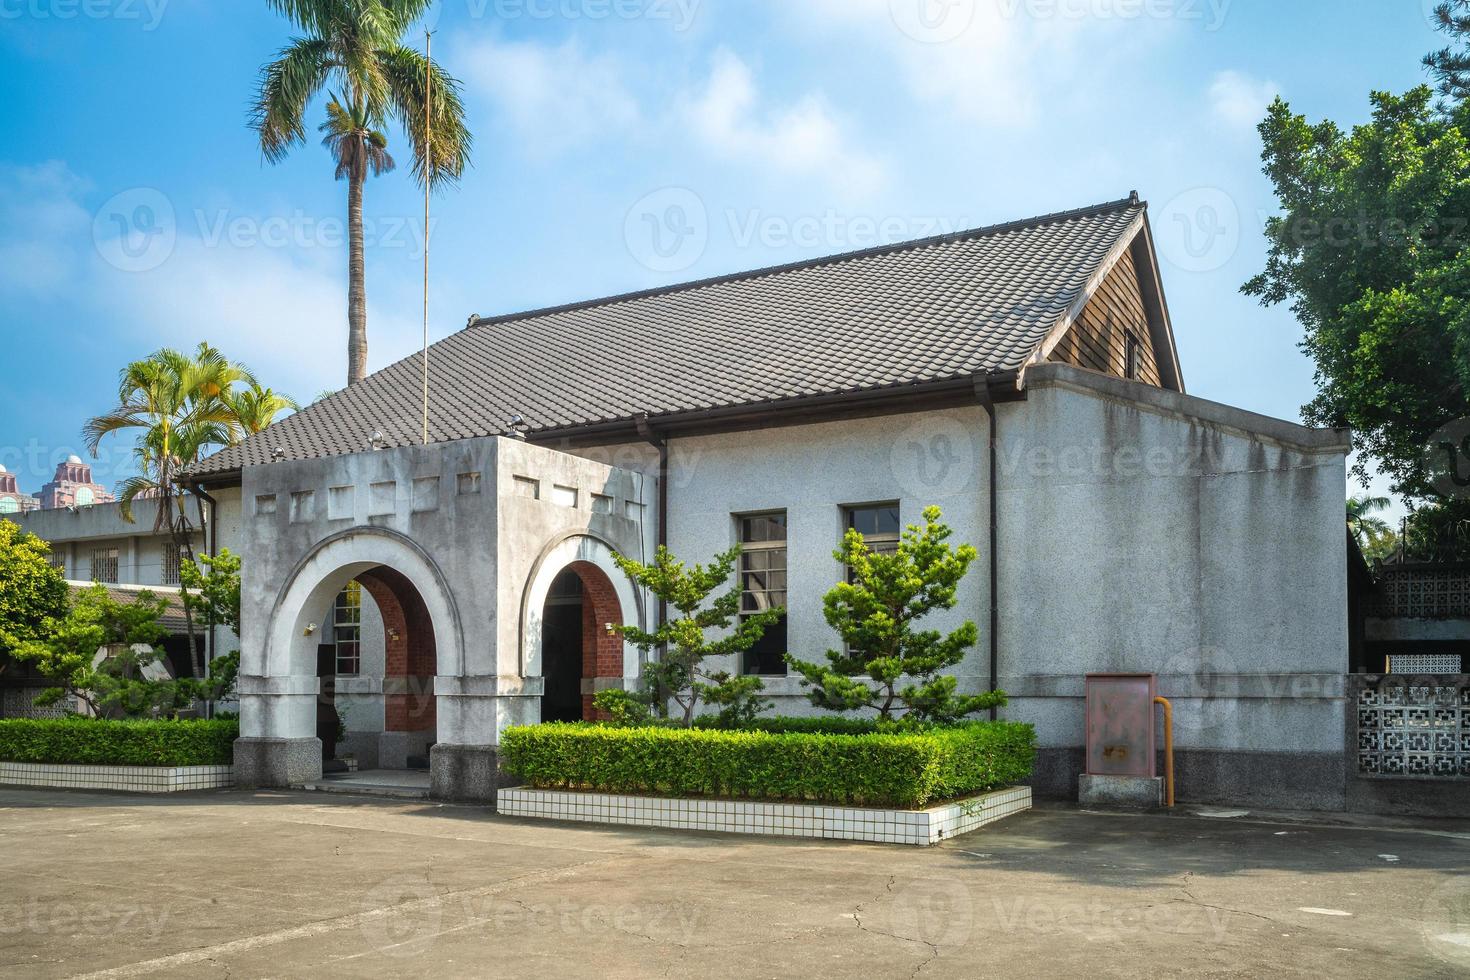 chiayi oude gevangenis, een voormalige gevangenis in chiayi, taiwan foto